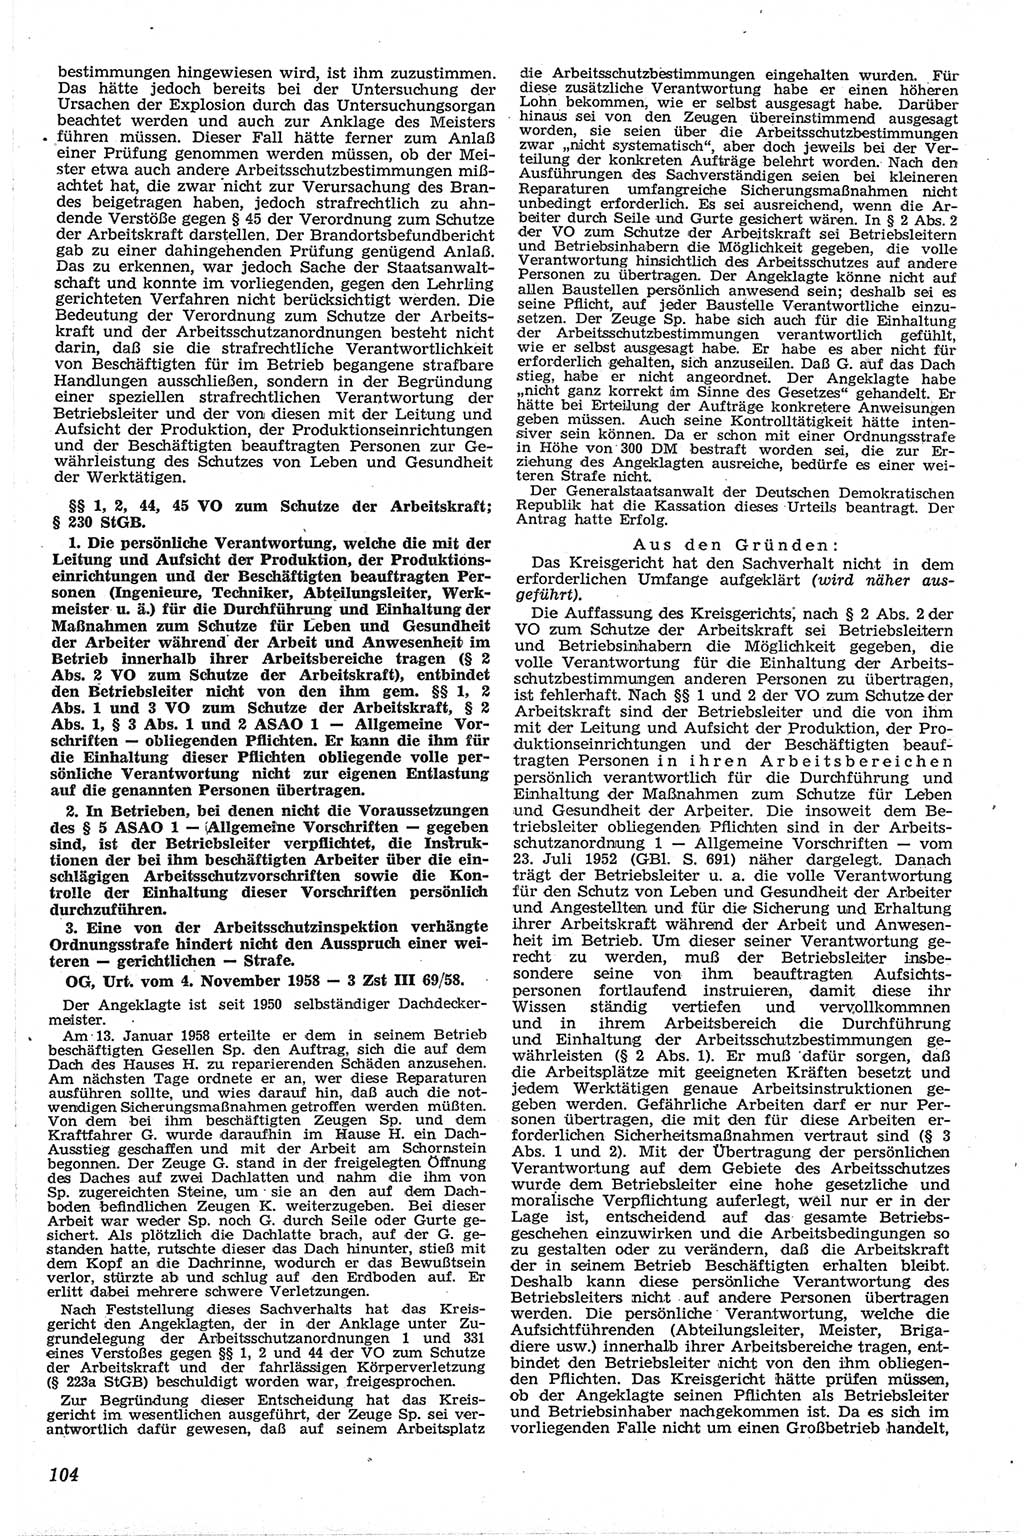 Neue Justiz (NJ), Zeitschrift für Recht und Rechtswissenschaft [Deutsche Demokratische Republik (DDR)], 13. Jahrgang 1959, Seite 104 (NJ DDR 1959, S. 104)